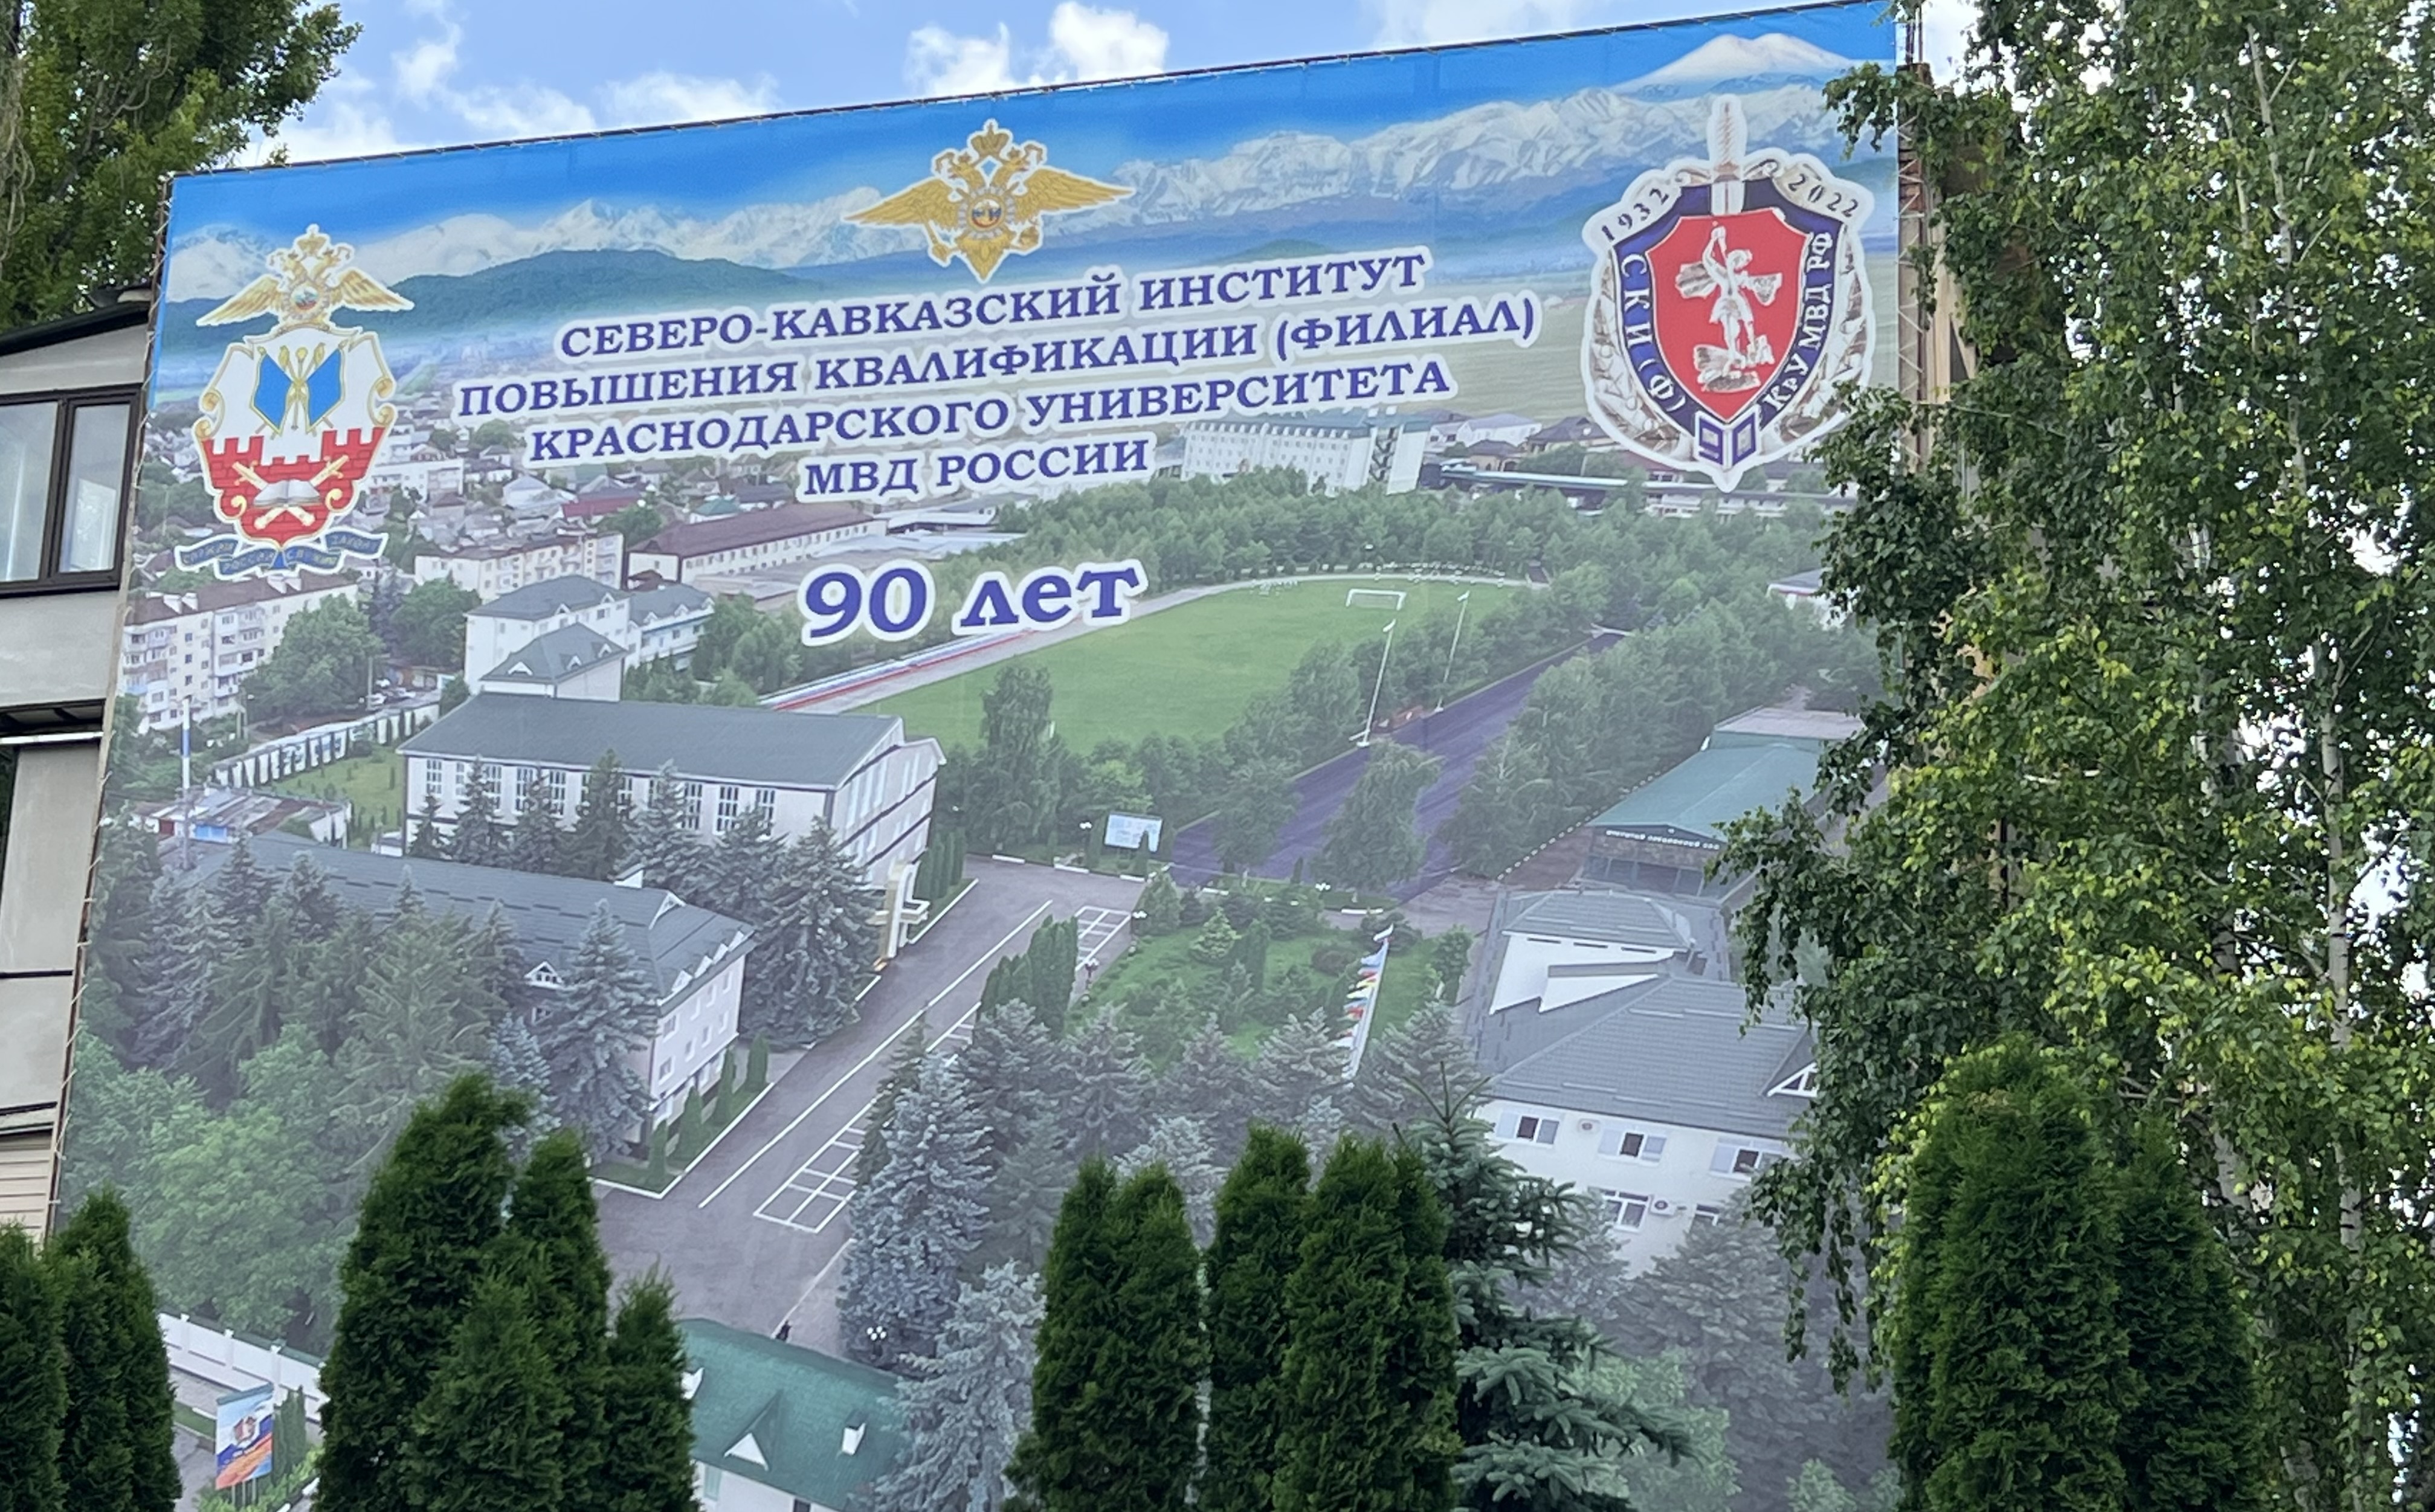 Северо-Кавказскому институту Краснодарского университета МВД России исполнилось 90 лет